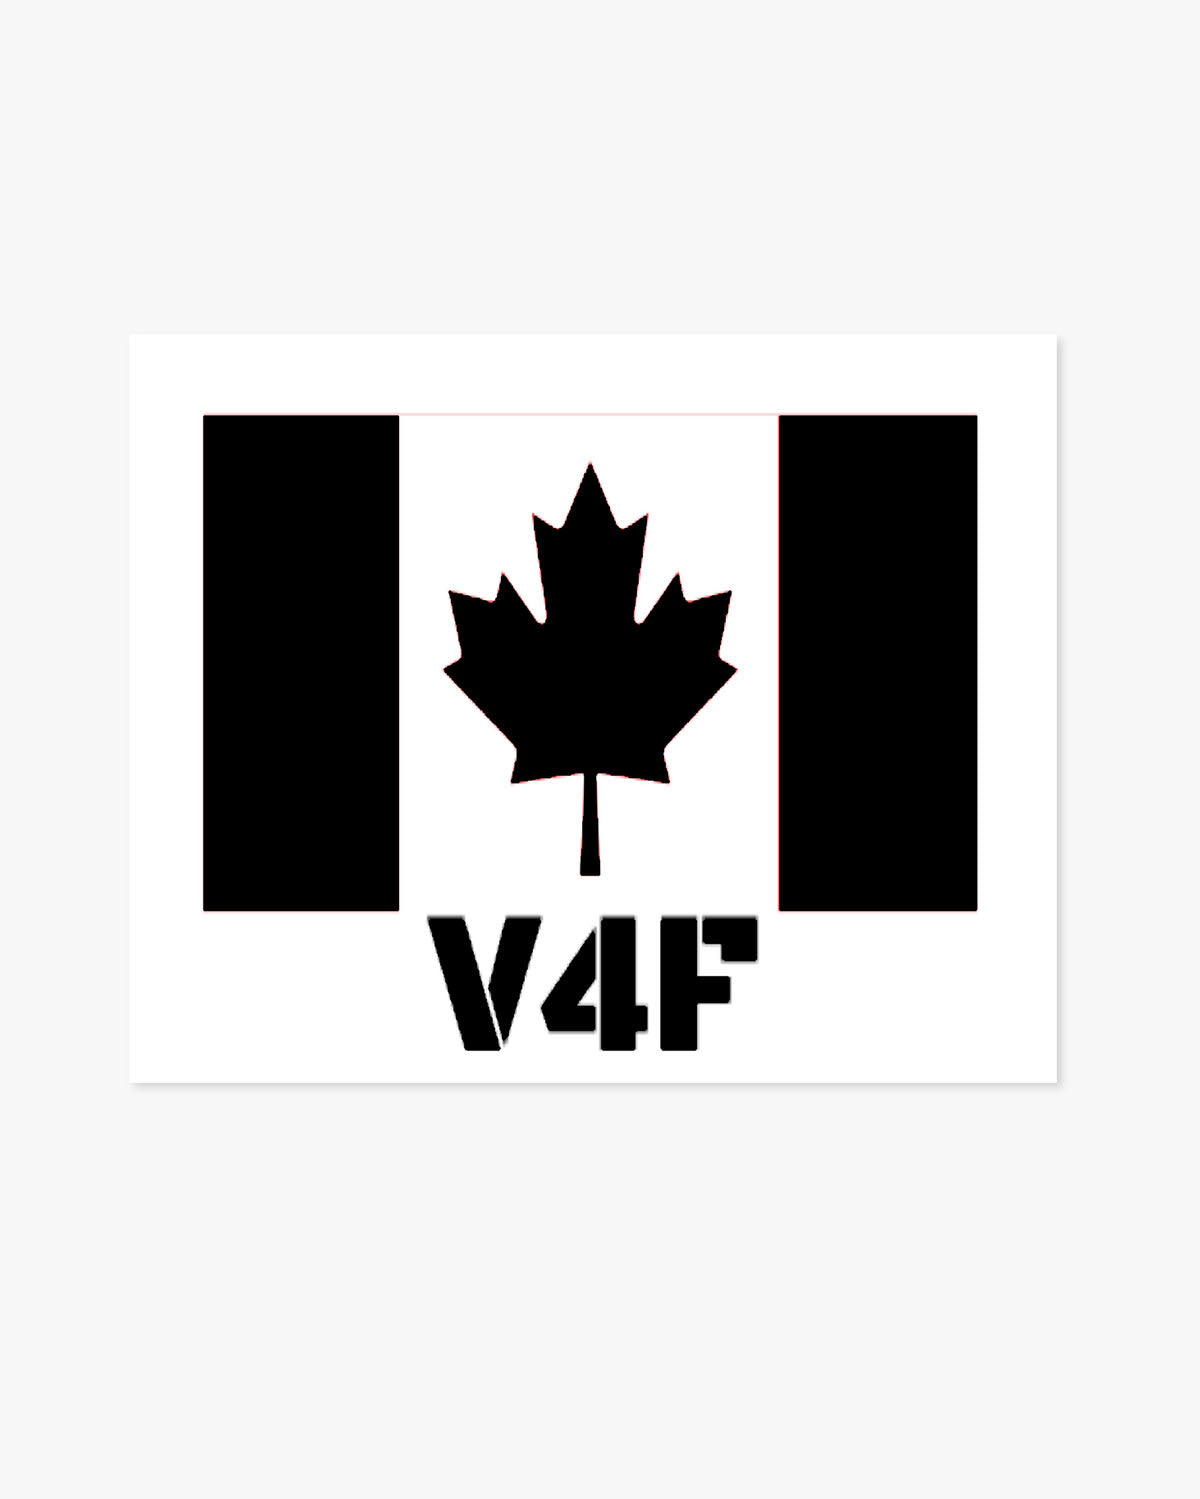 V4F w/Canada Flag Car Decal